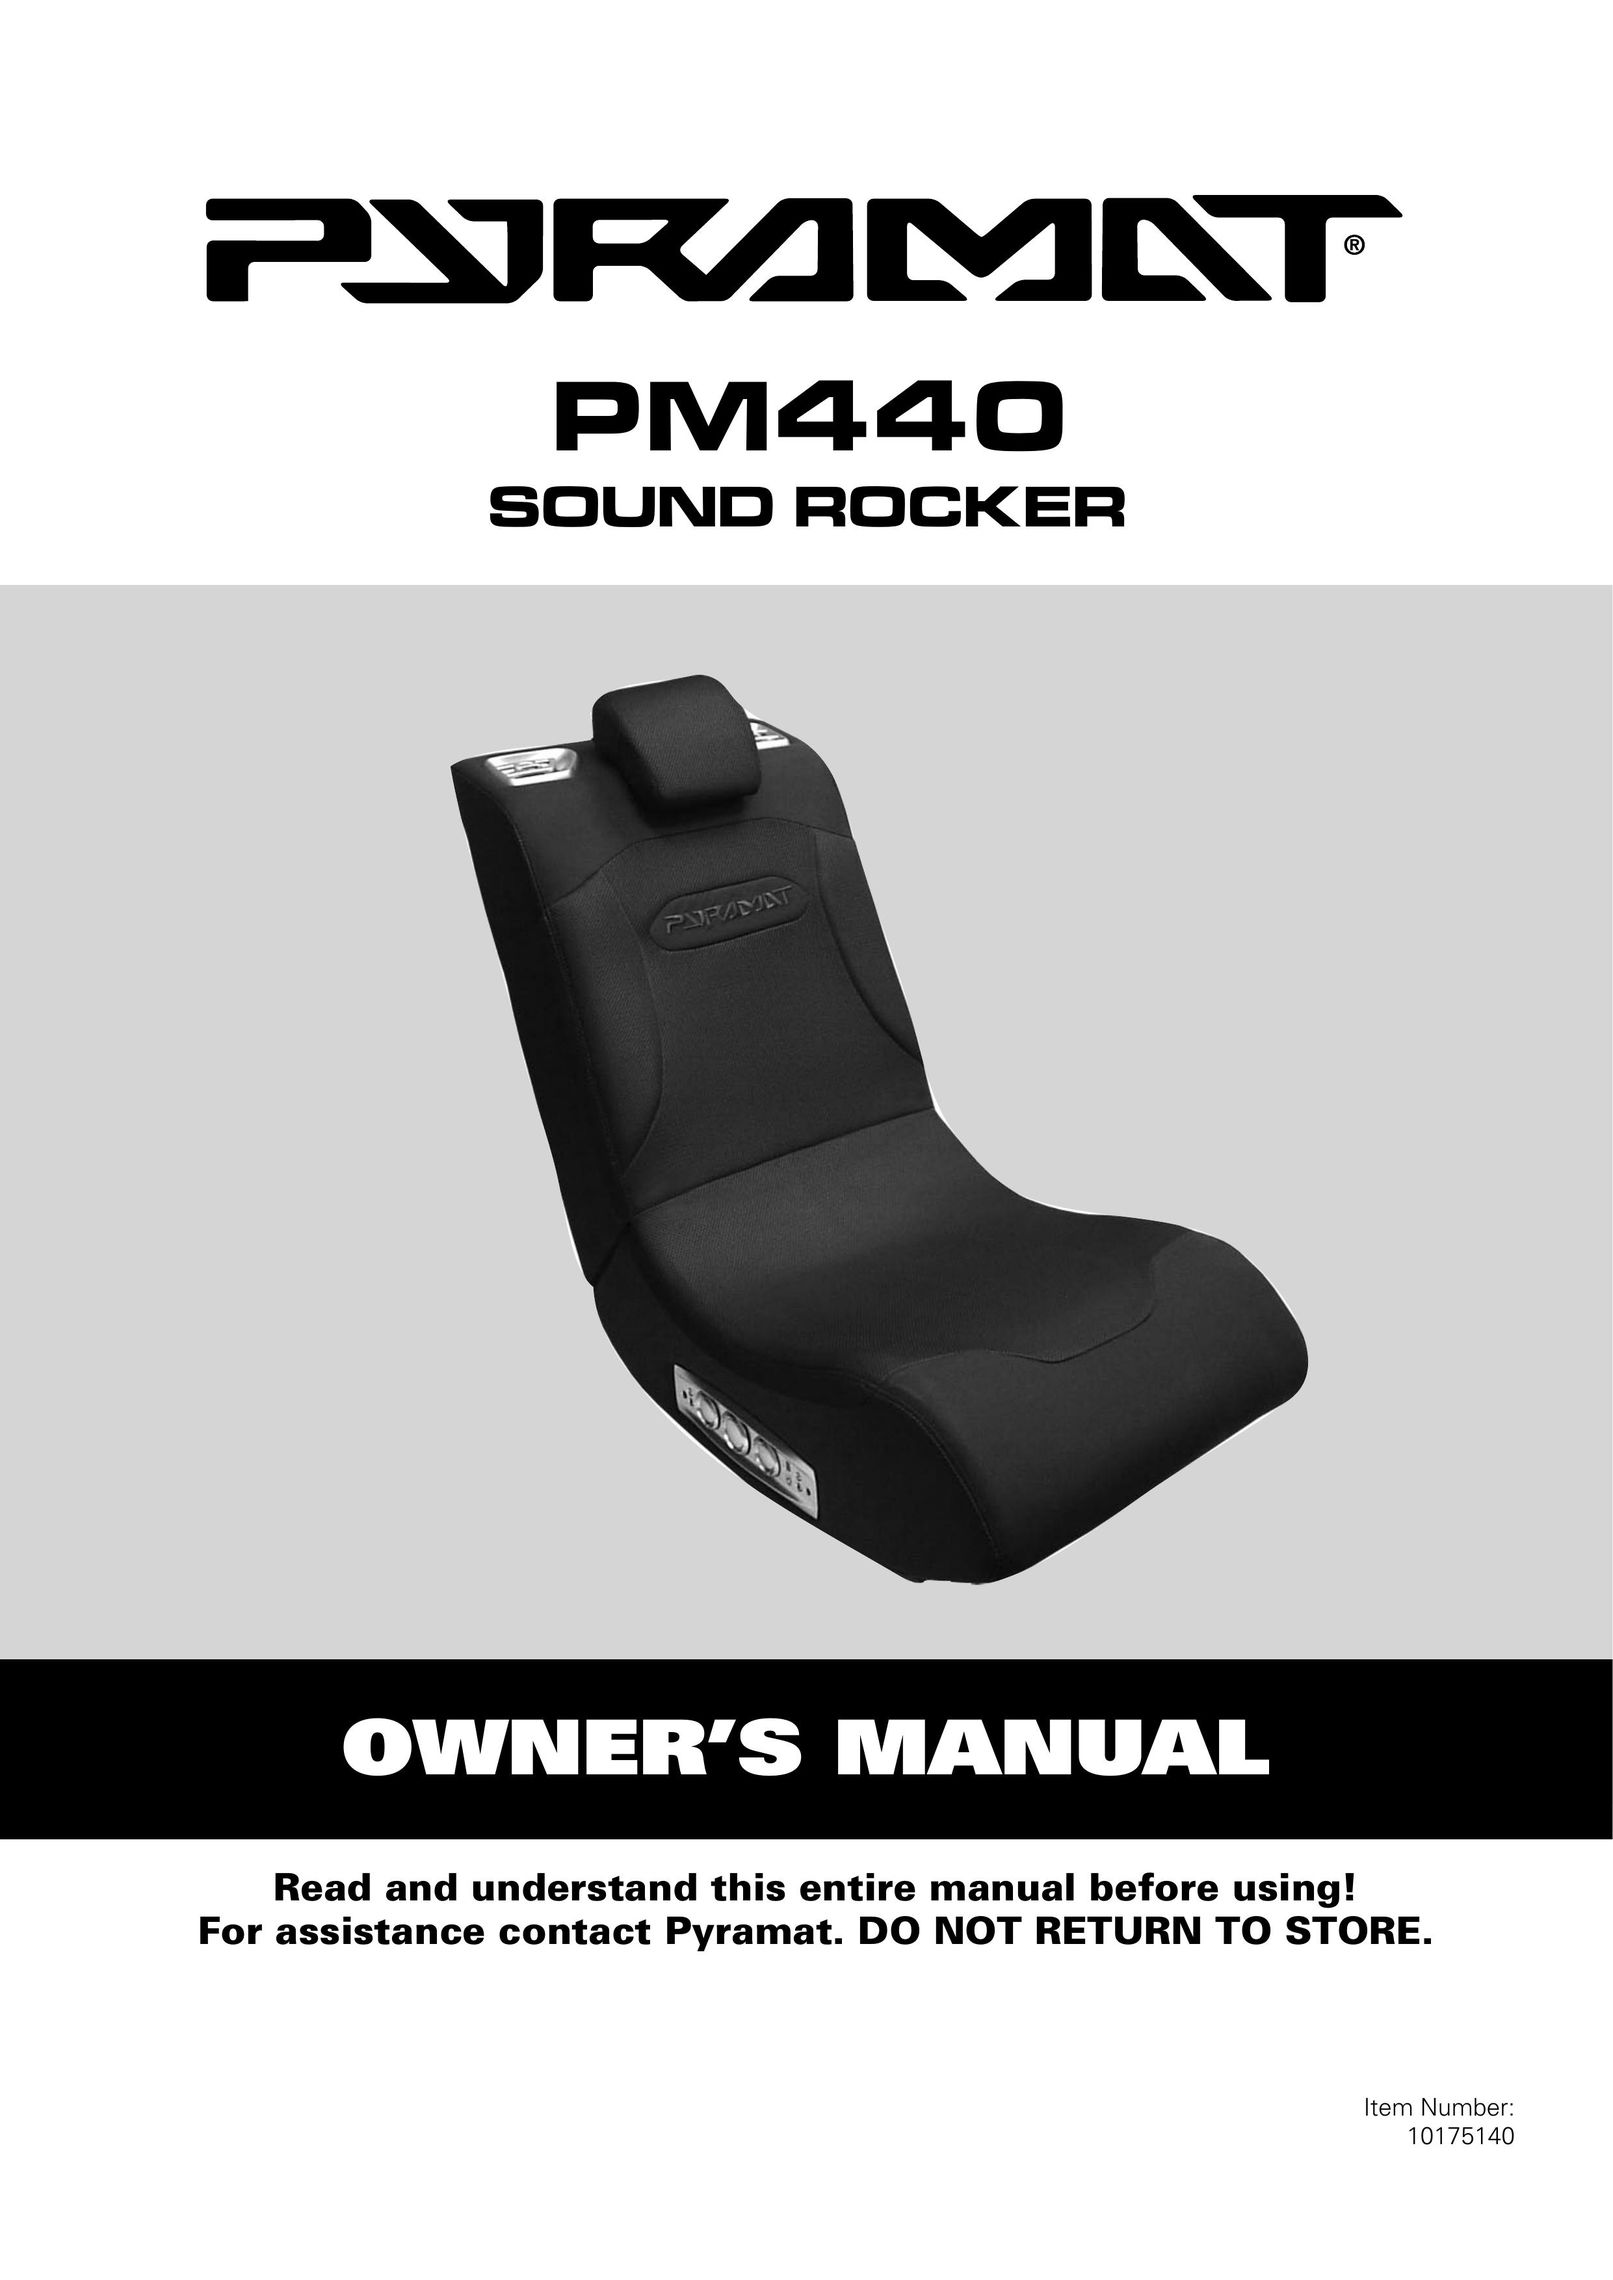 Pyramat PM440 Video Game Furniture User Manual